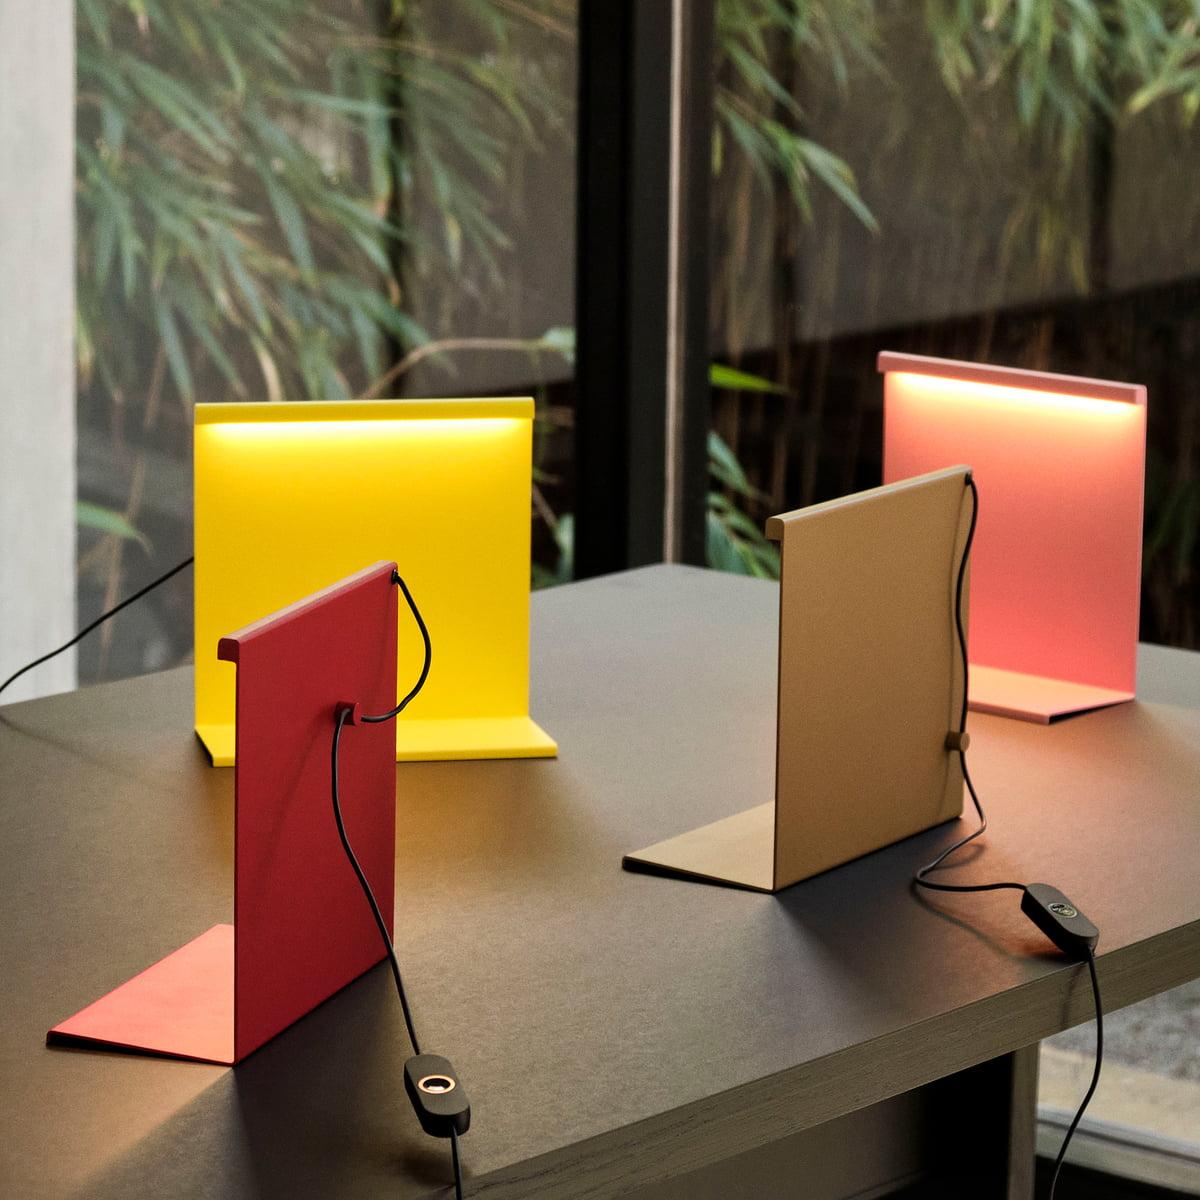 
Inspiré par l'architecture innovante de son compatriote Luis Barragan, Moisés Hernández a conçu la lampe de table LBM pour refléter sa fascination pour la géométrie monolithique, la couleur, la lumière et les ombres. Construite à partir de minces